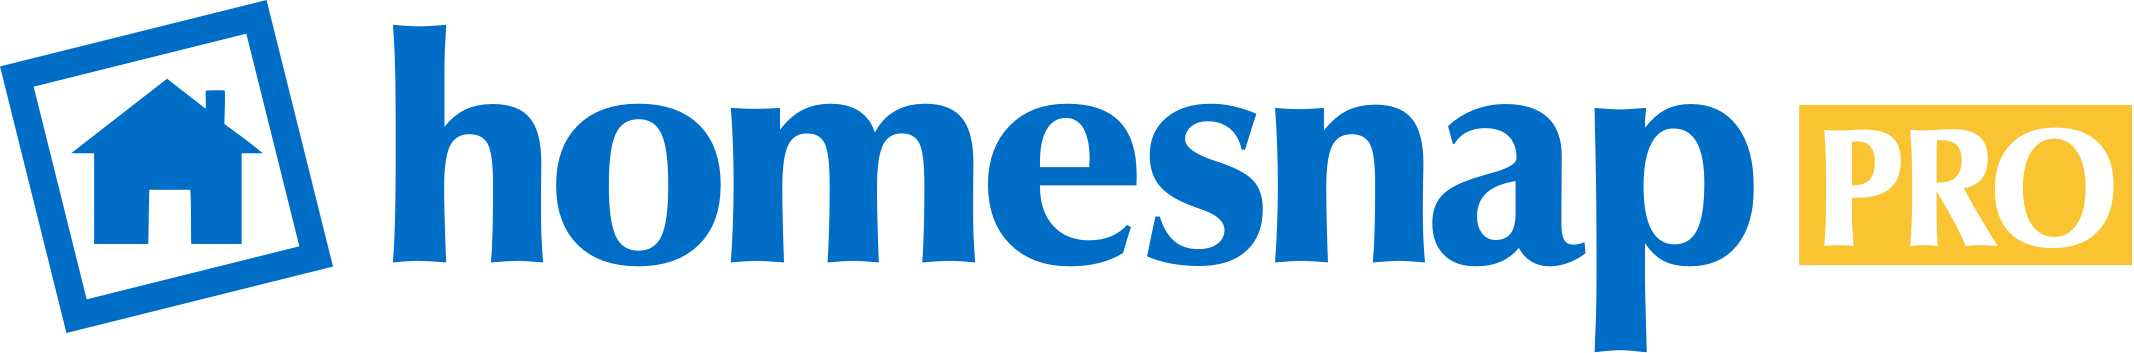 hs-logo